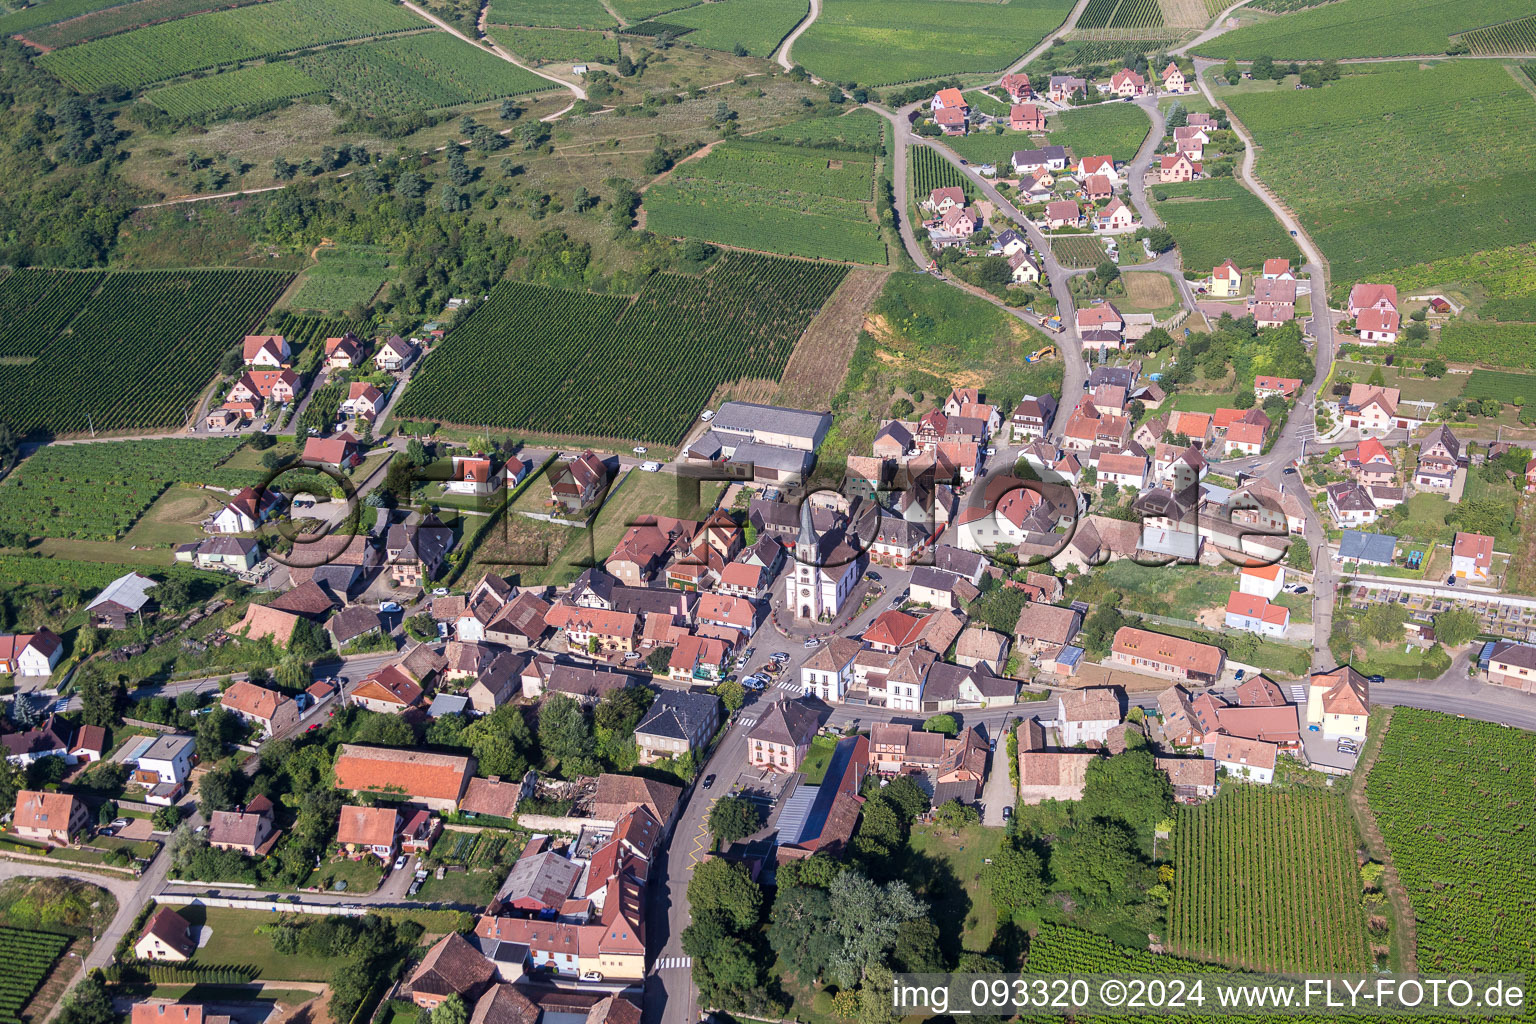 Luftbild von Dorf - Ansicht am Rande von landwirtschaftlichen Feldern und Nutzflächen in Rorschwihr in Grand Est im Bundesland Haut-Rhin, Frankreich